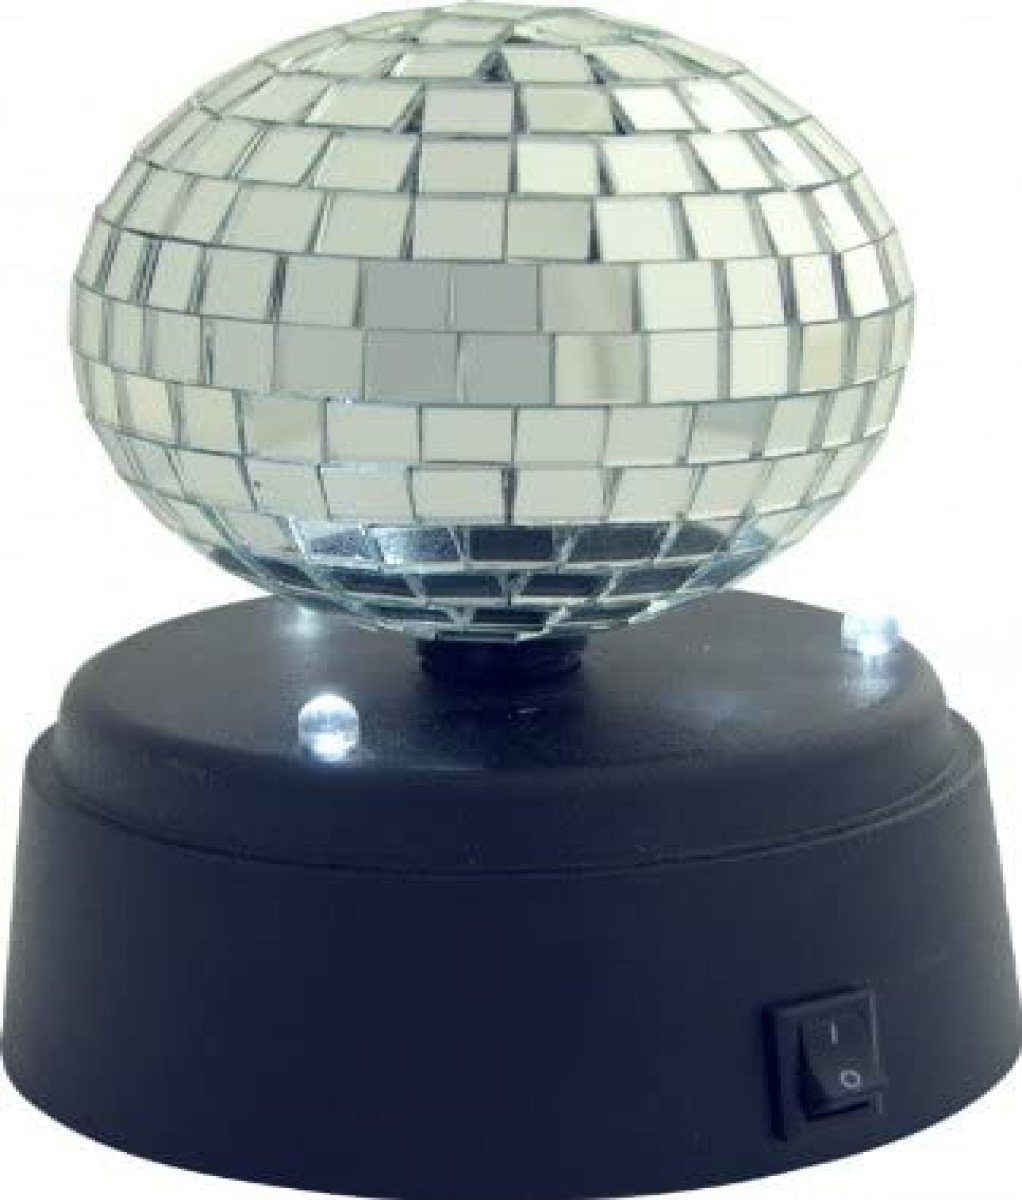 IOIO LED Discolicht »DSB 01 Mini Spiegelball«, Batteriebetrieb, Discoball,  Spiegel Disco Kugel, Durchmesser 7cm, LED Weiß Partybeleuchtung,  schwarz/silber online kaufen | OTTO